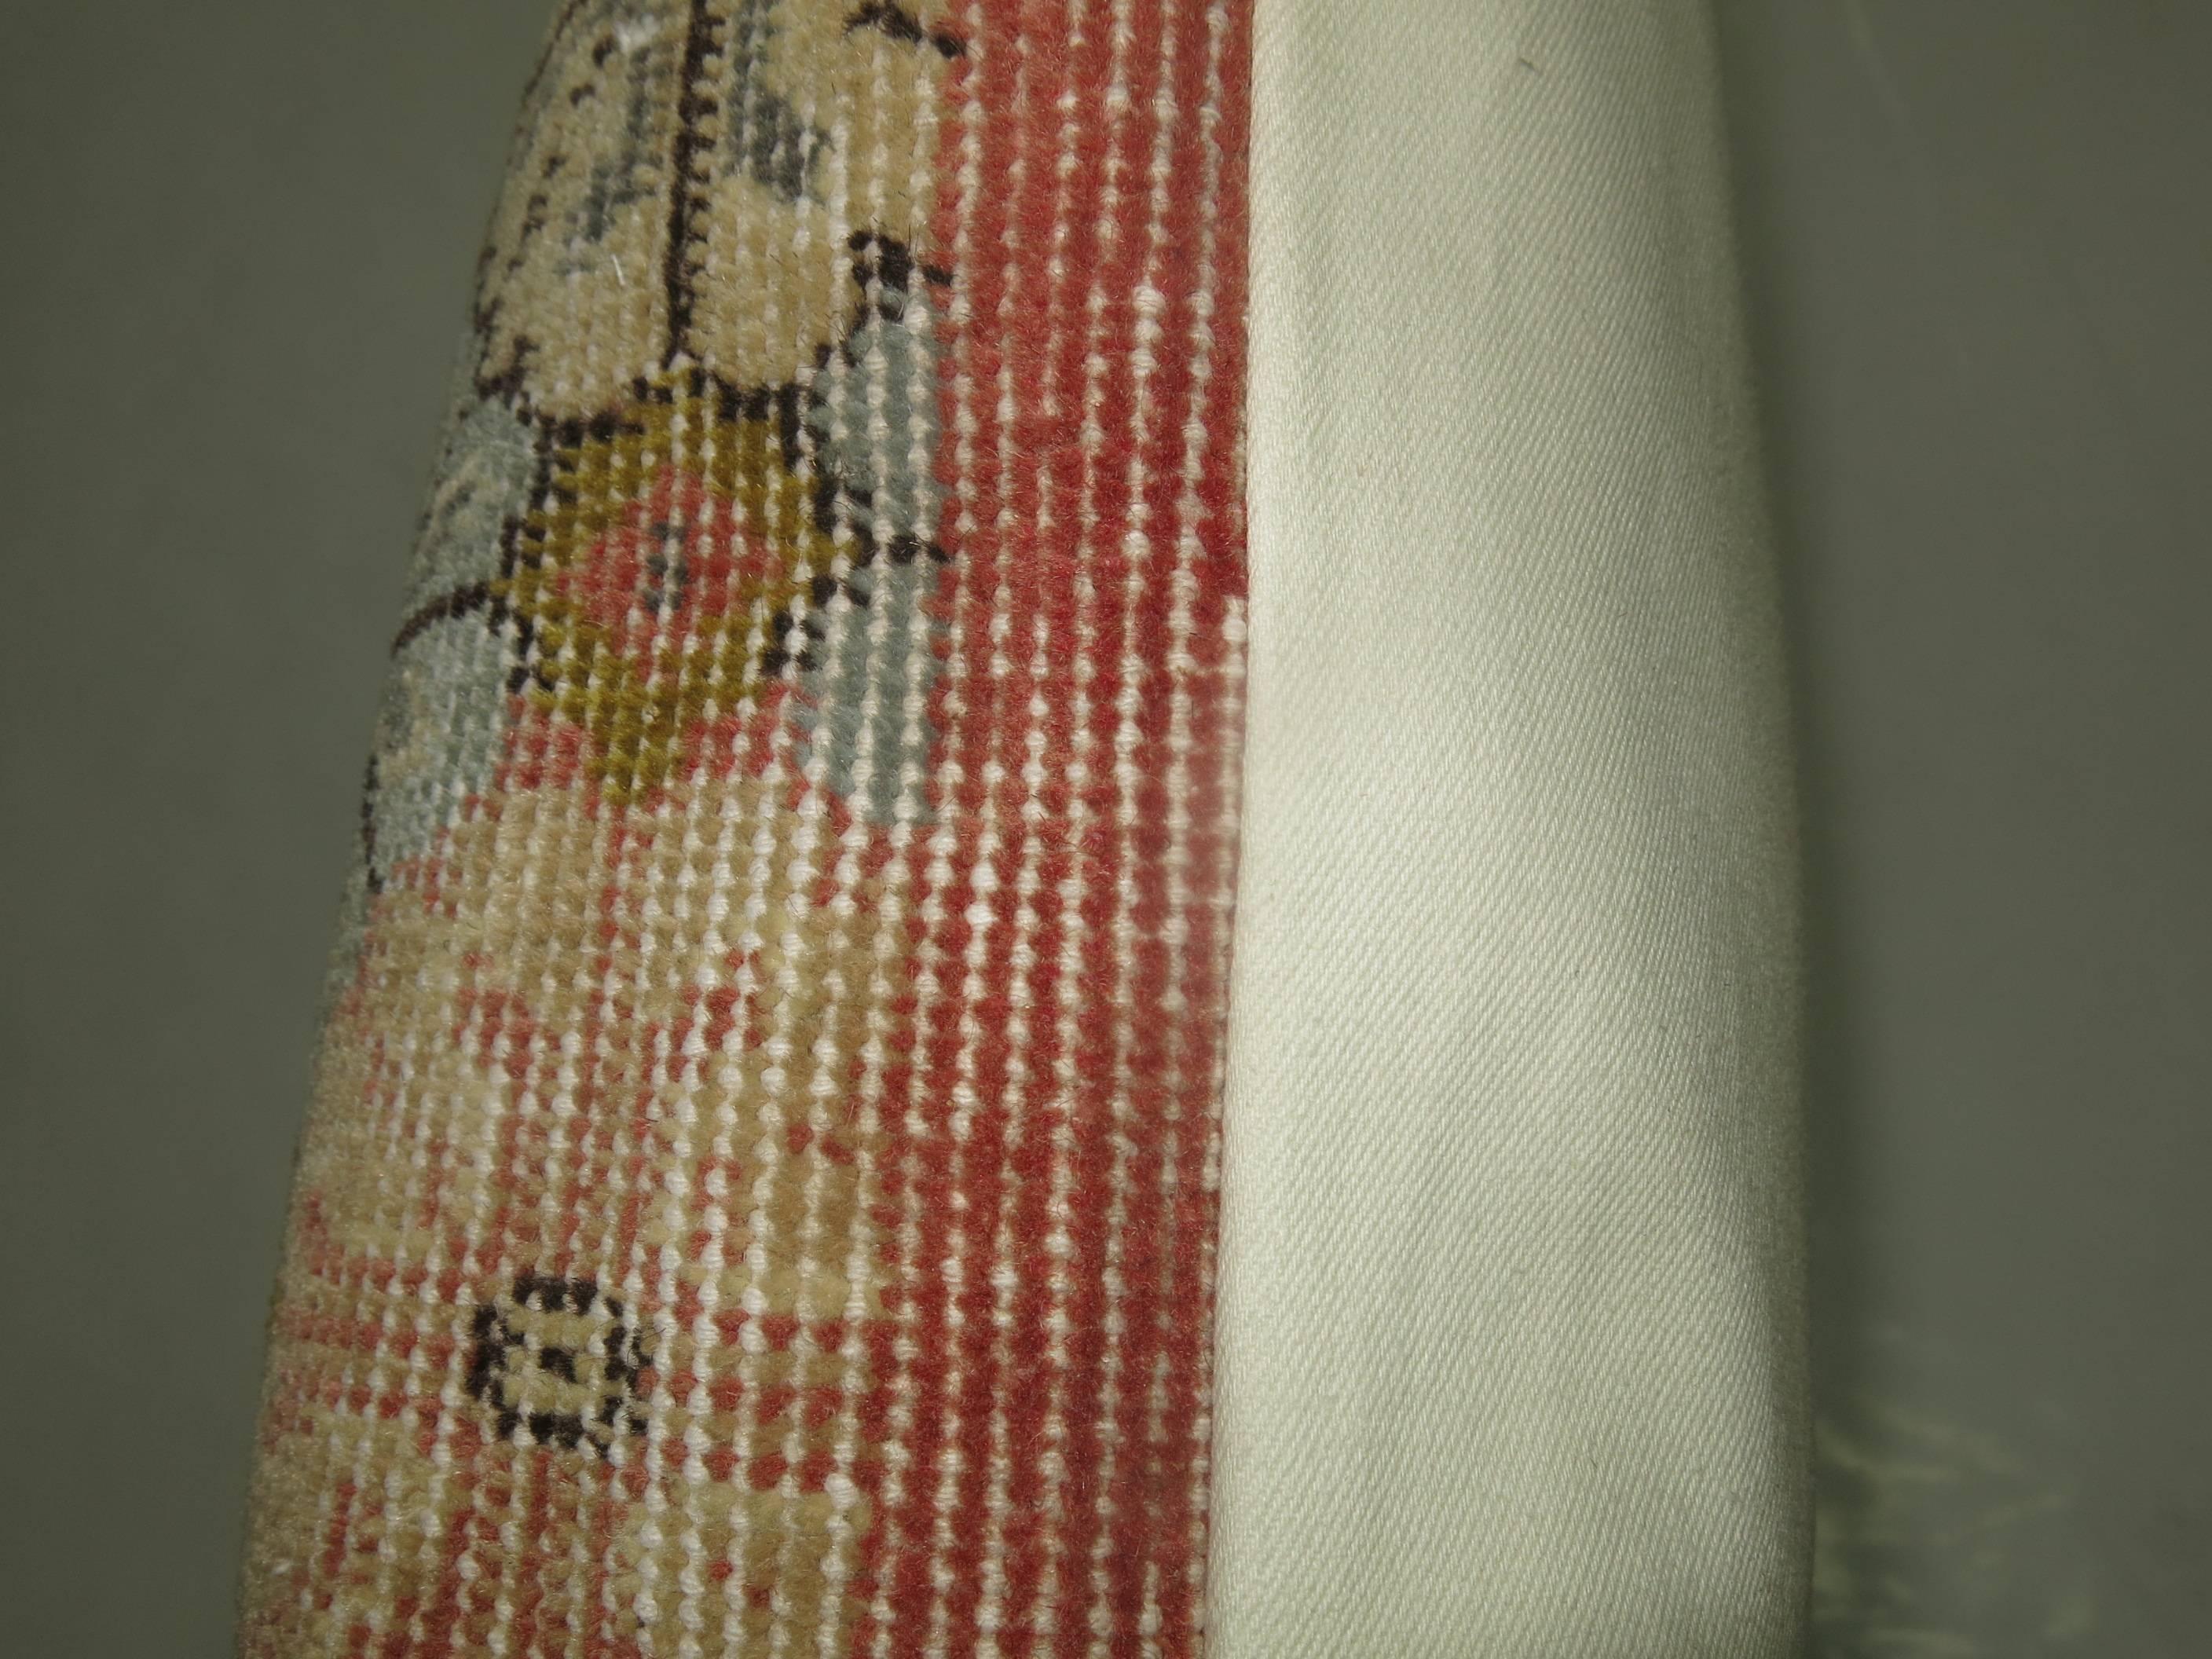 Oreiller fabriqué à partir d'un tapis turc shabby chic.

24'' x 28''